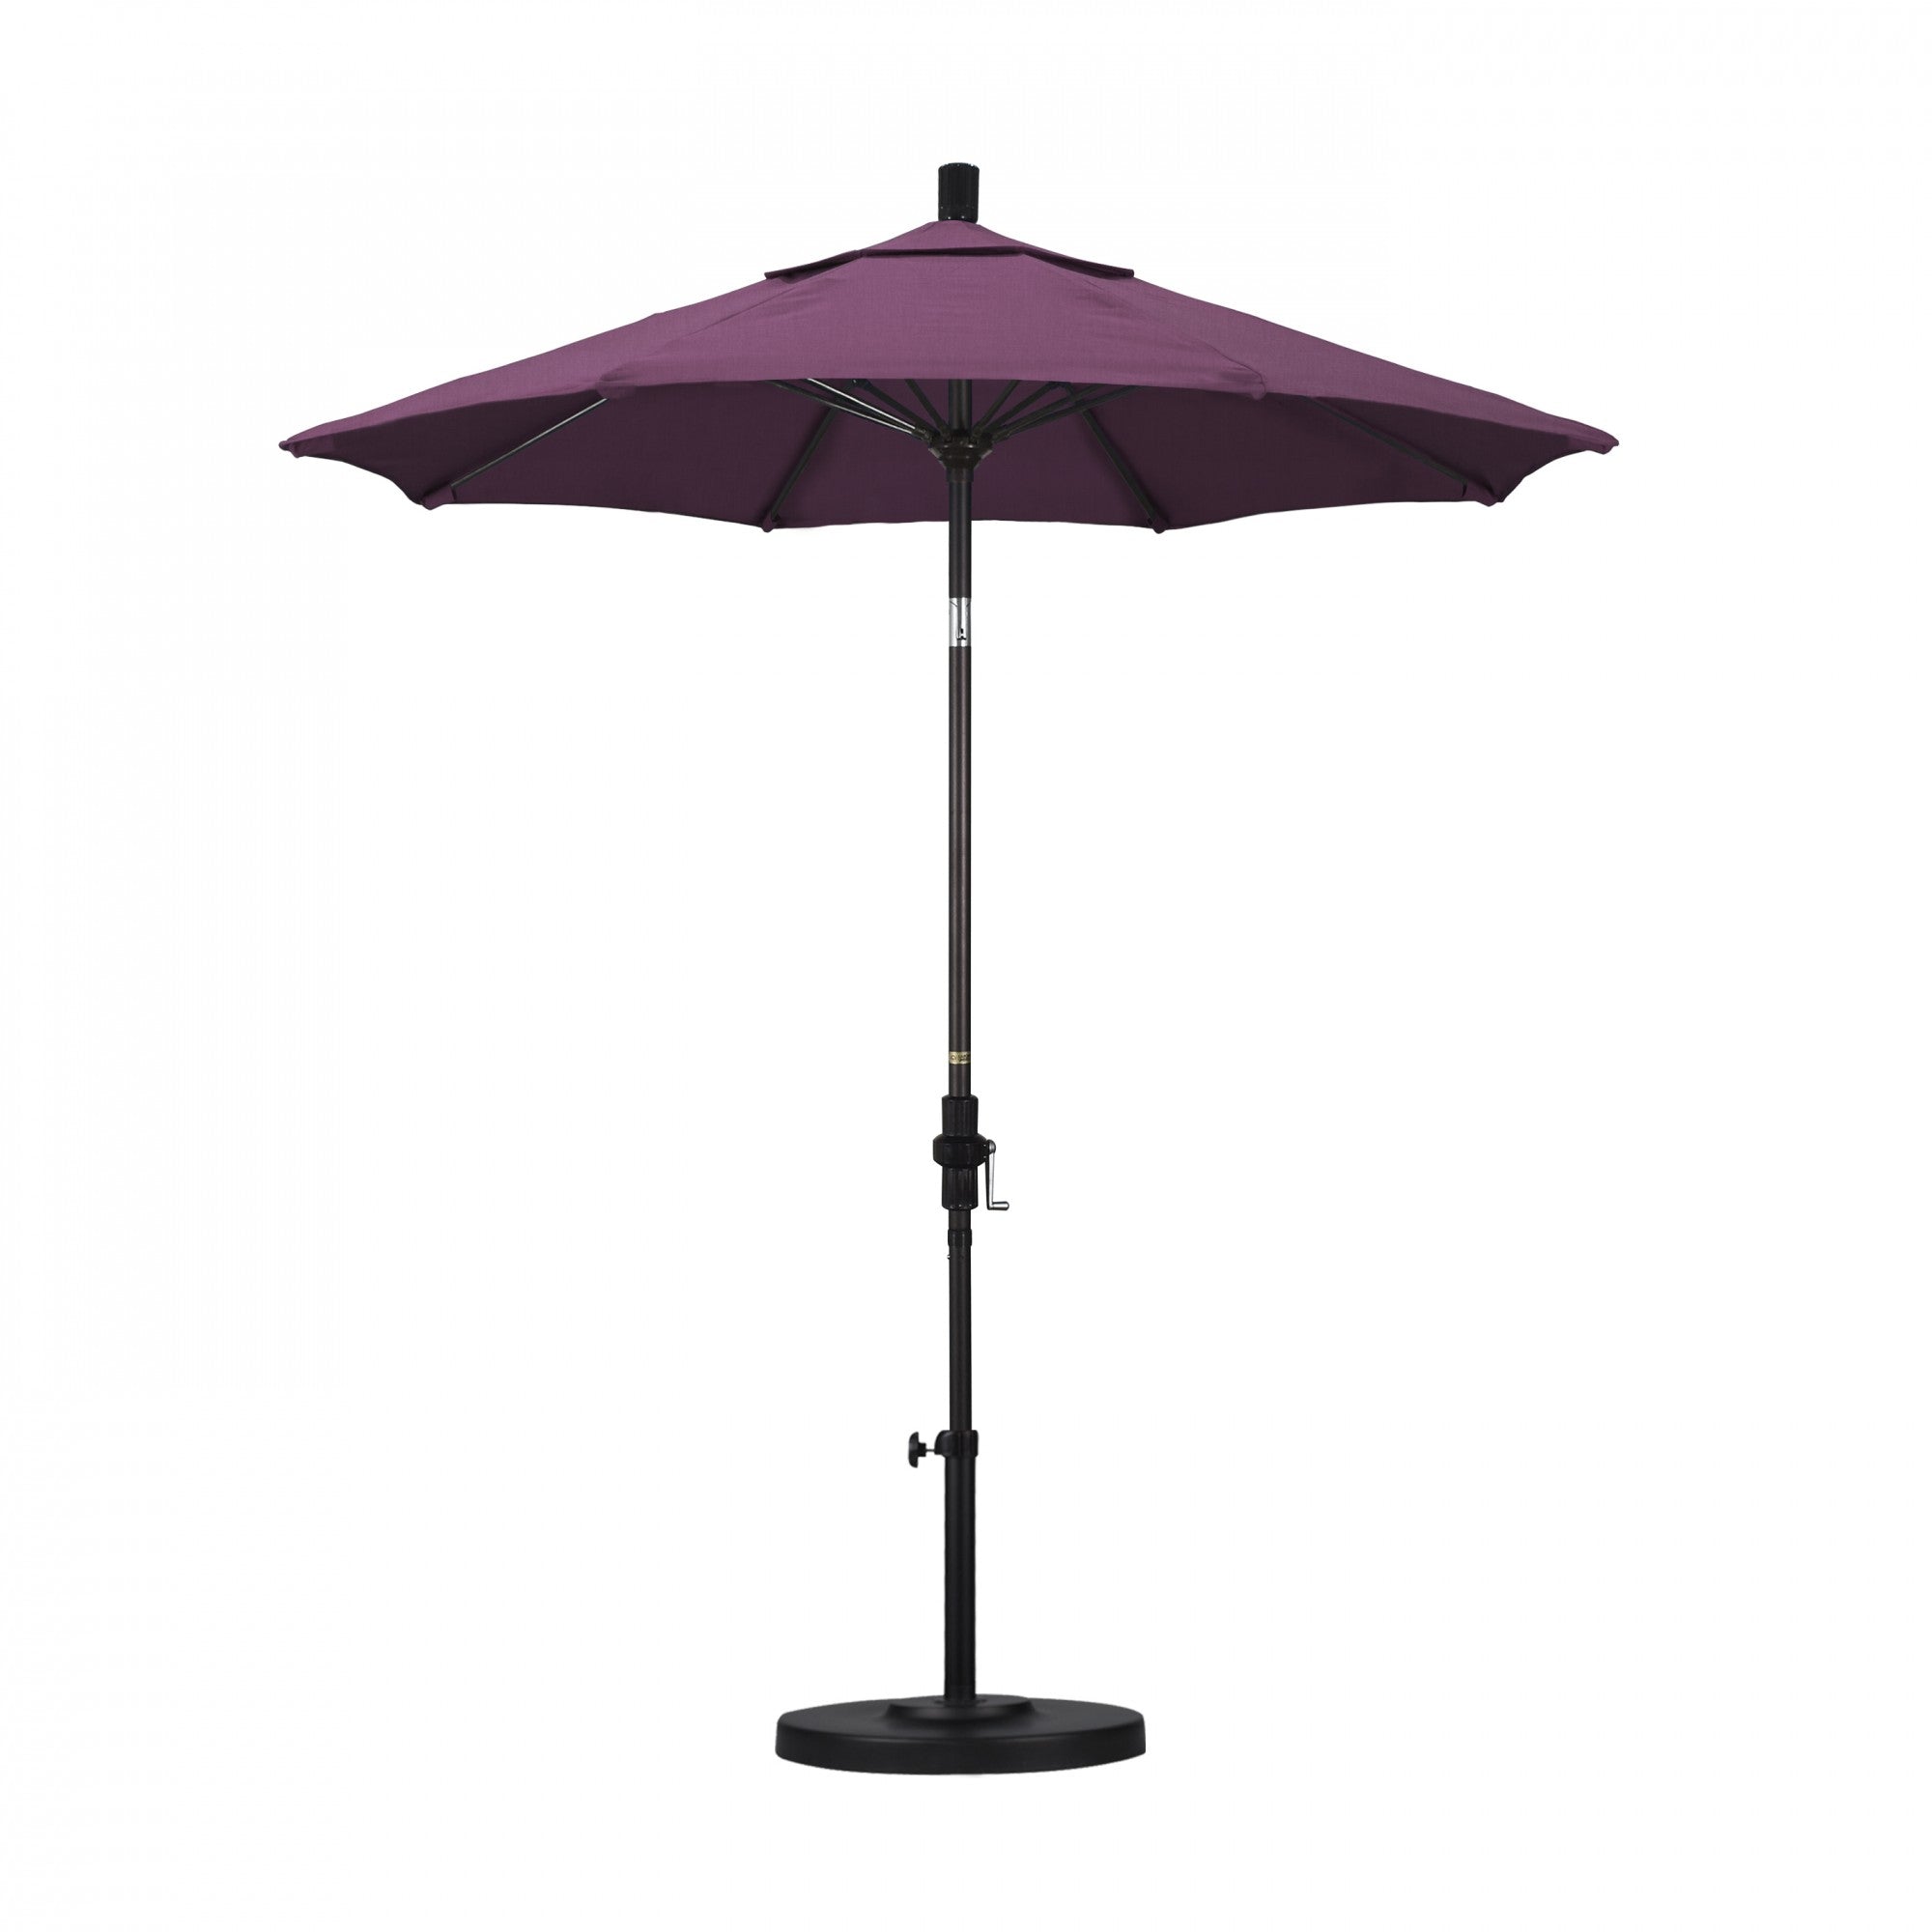 California Umbrella - 7.5' - Patio Umbrella Umbrella - Aluminum Pole - Iris - Sunbrella  - GSCUF758117-57002